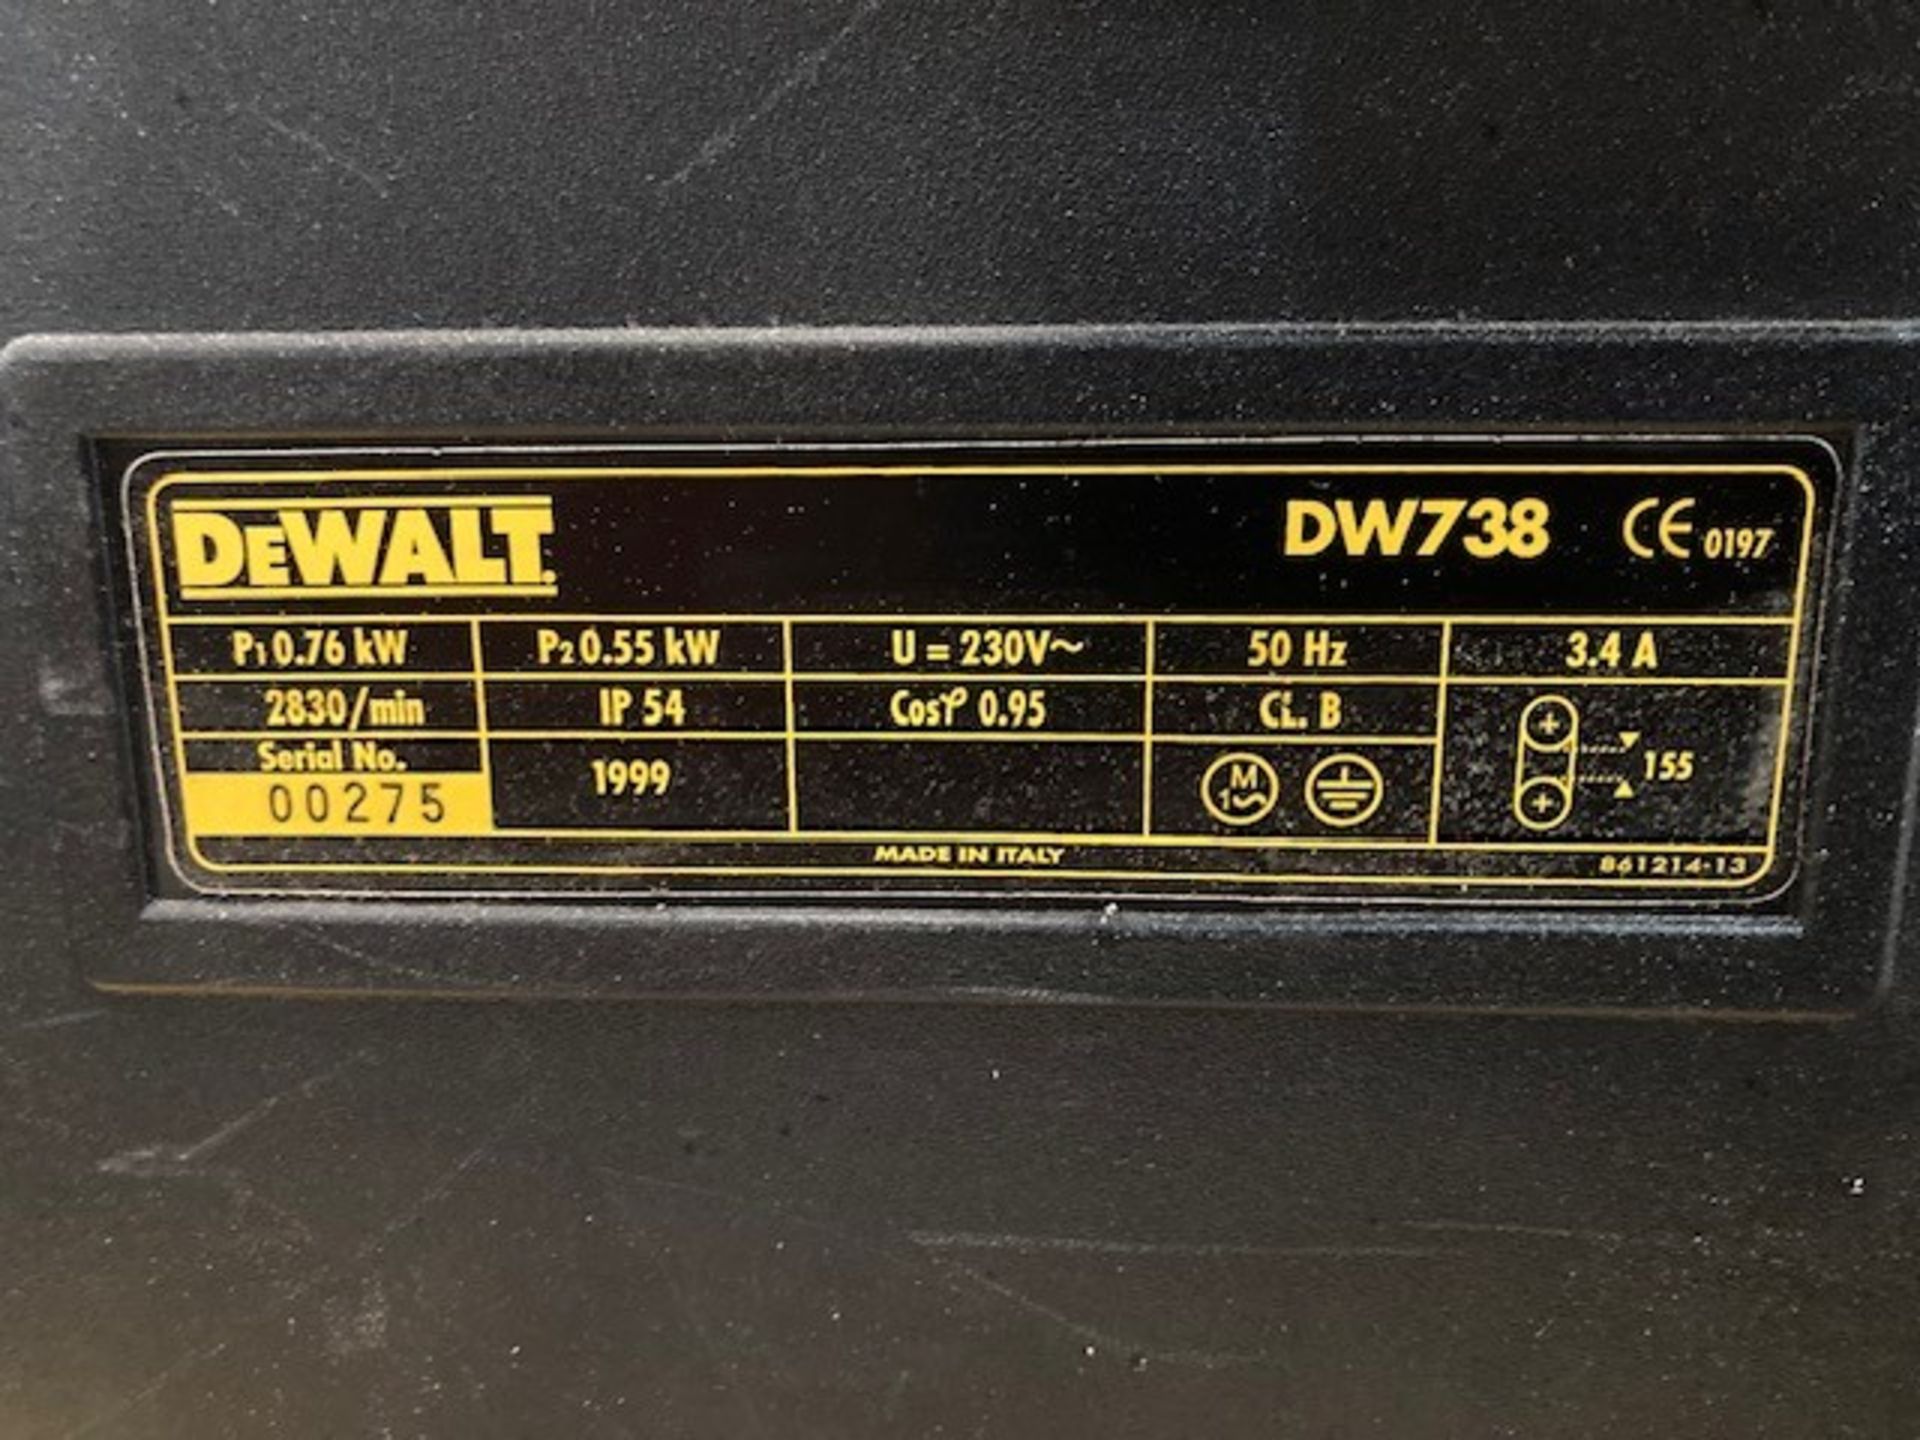 Dewalt DW 738 Vertical Bandsaw - Image 10 of 13